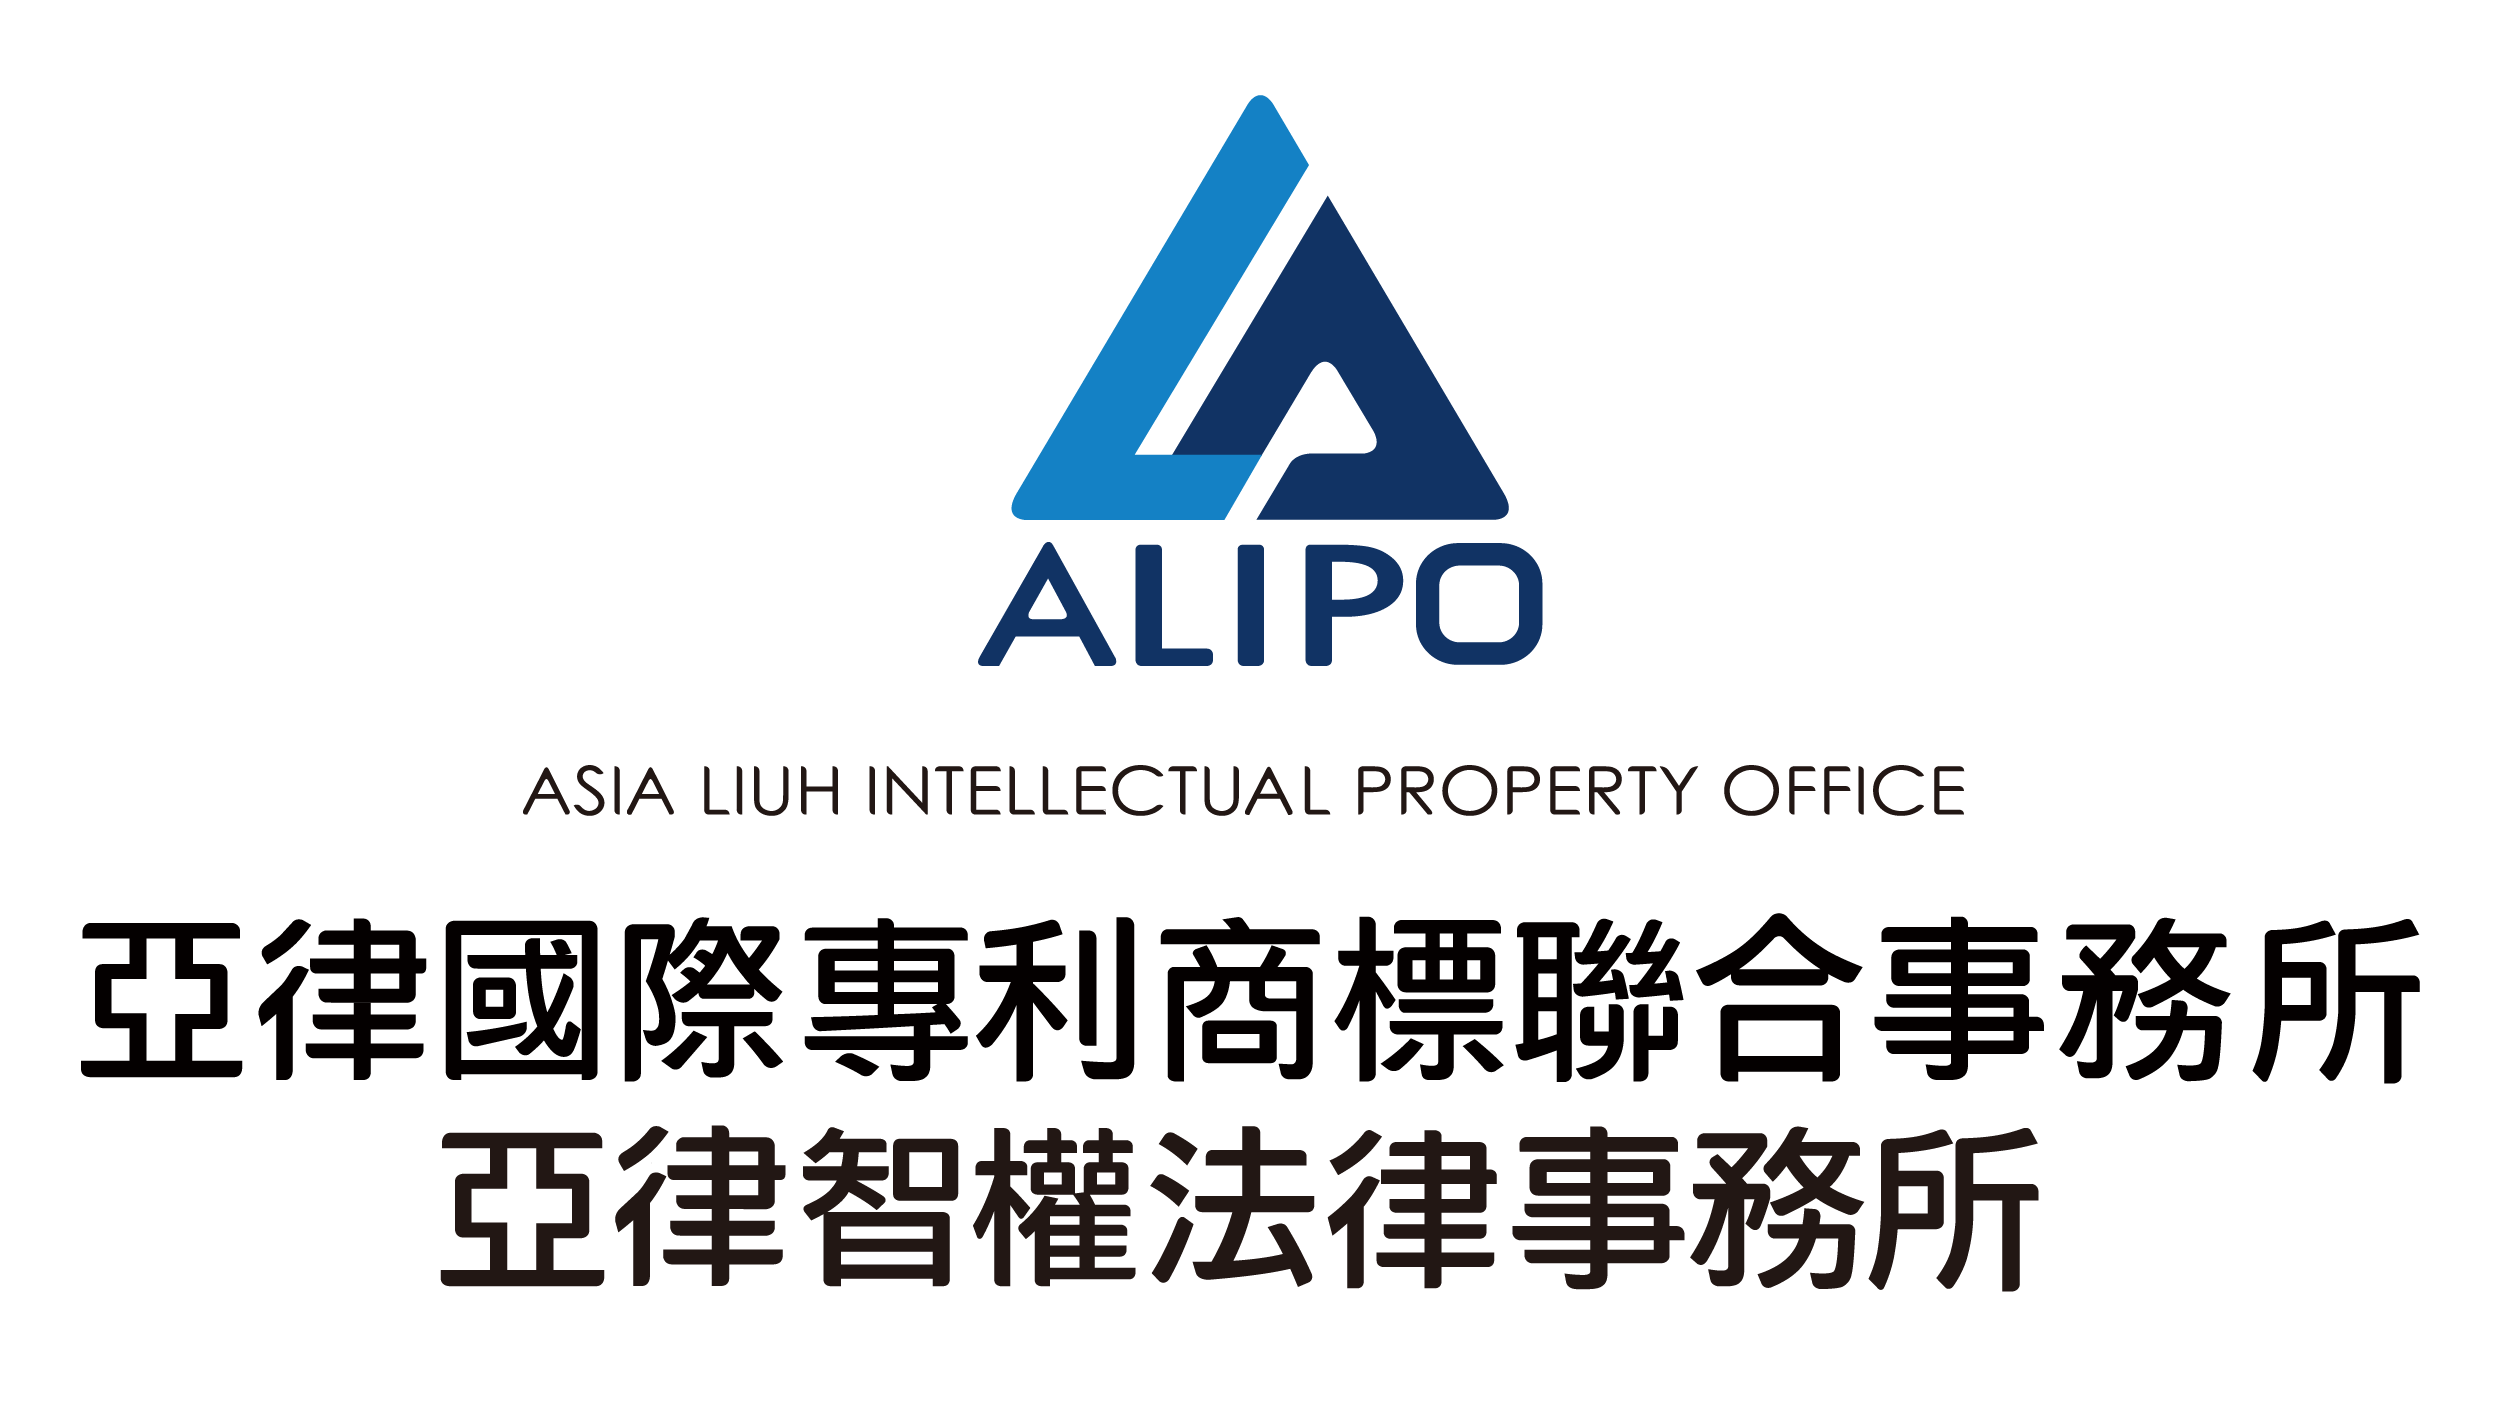 亞律國際專利商標聯合事務所Logo